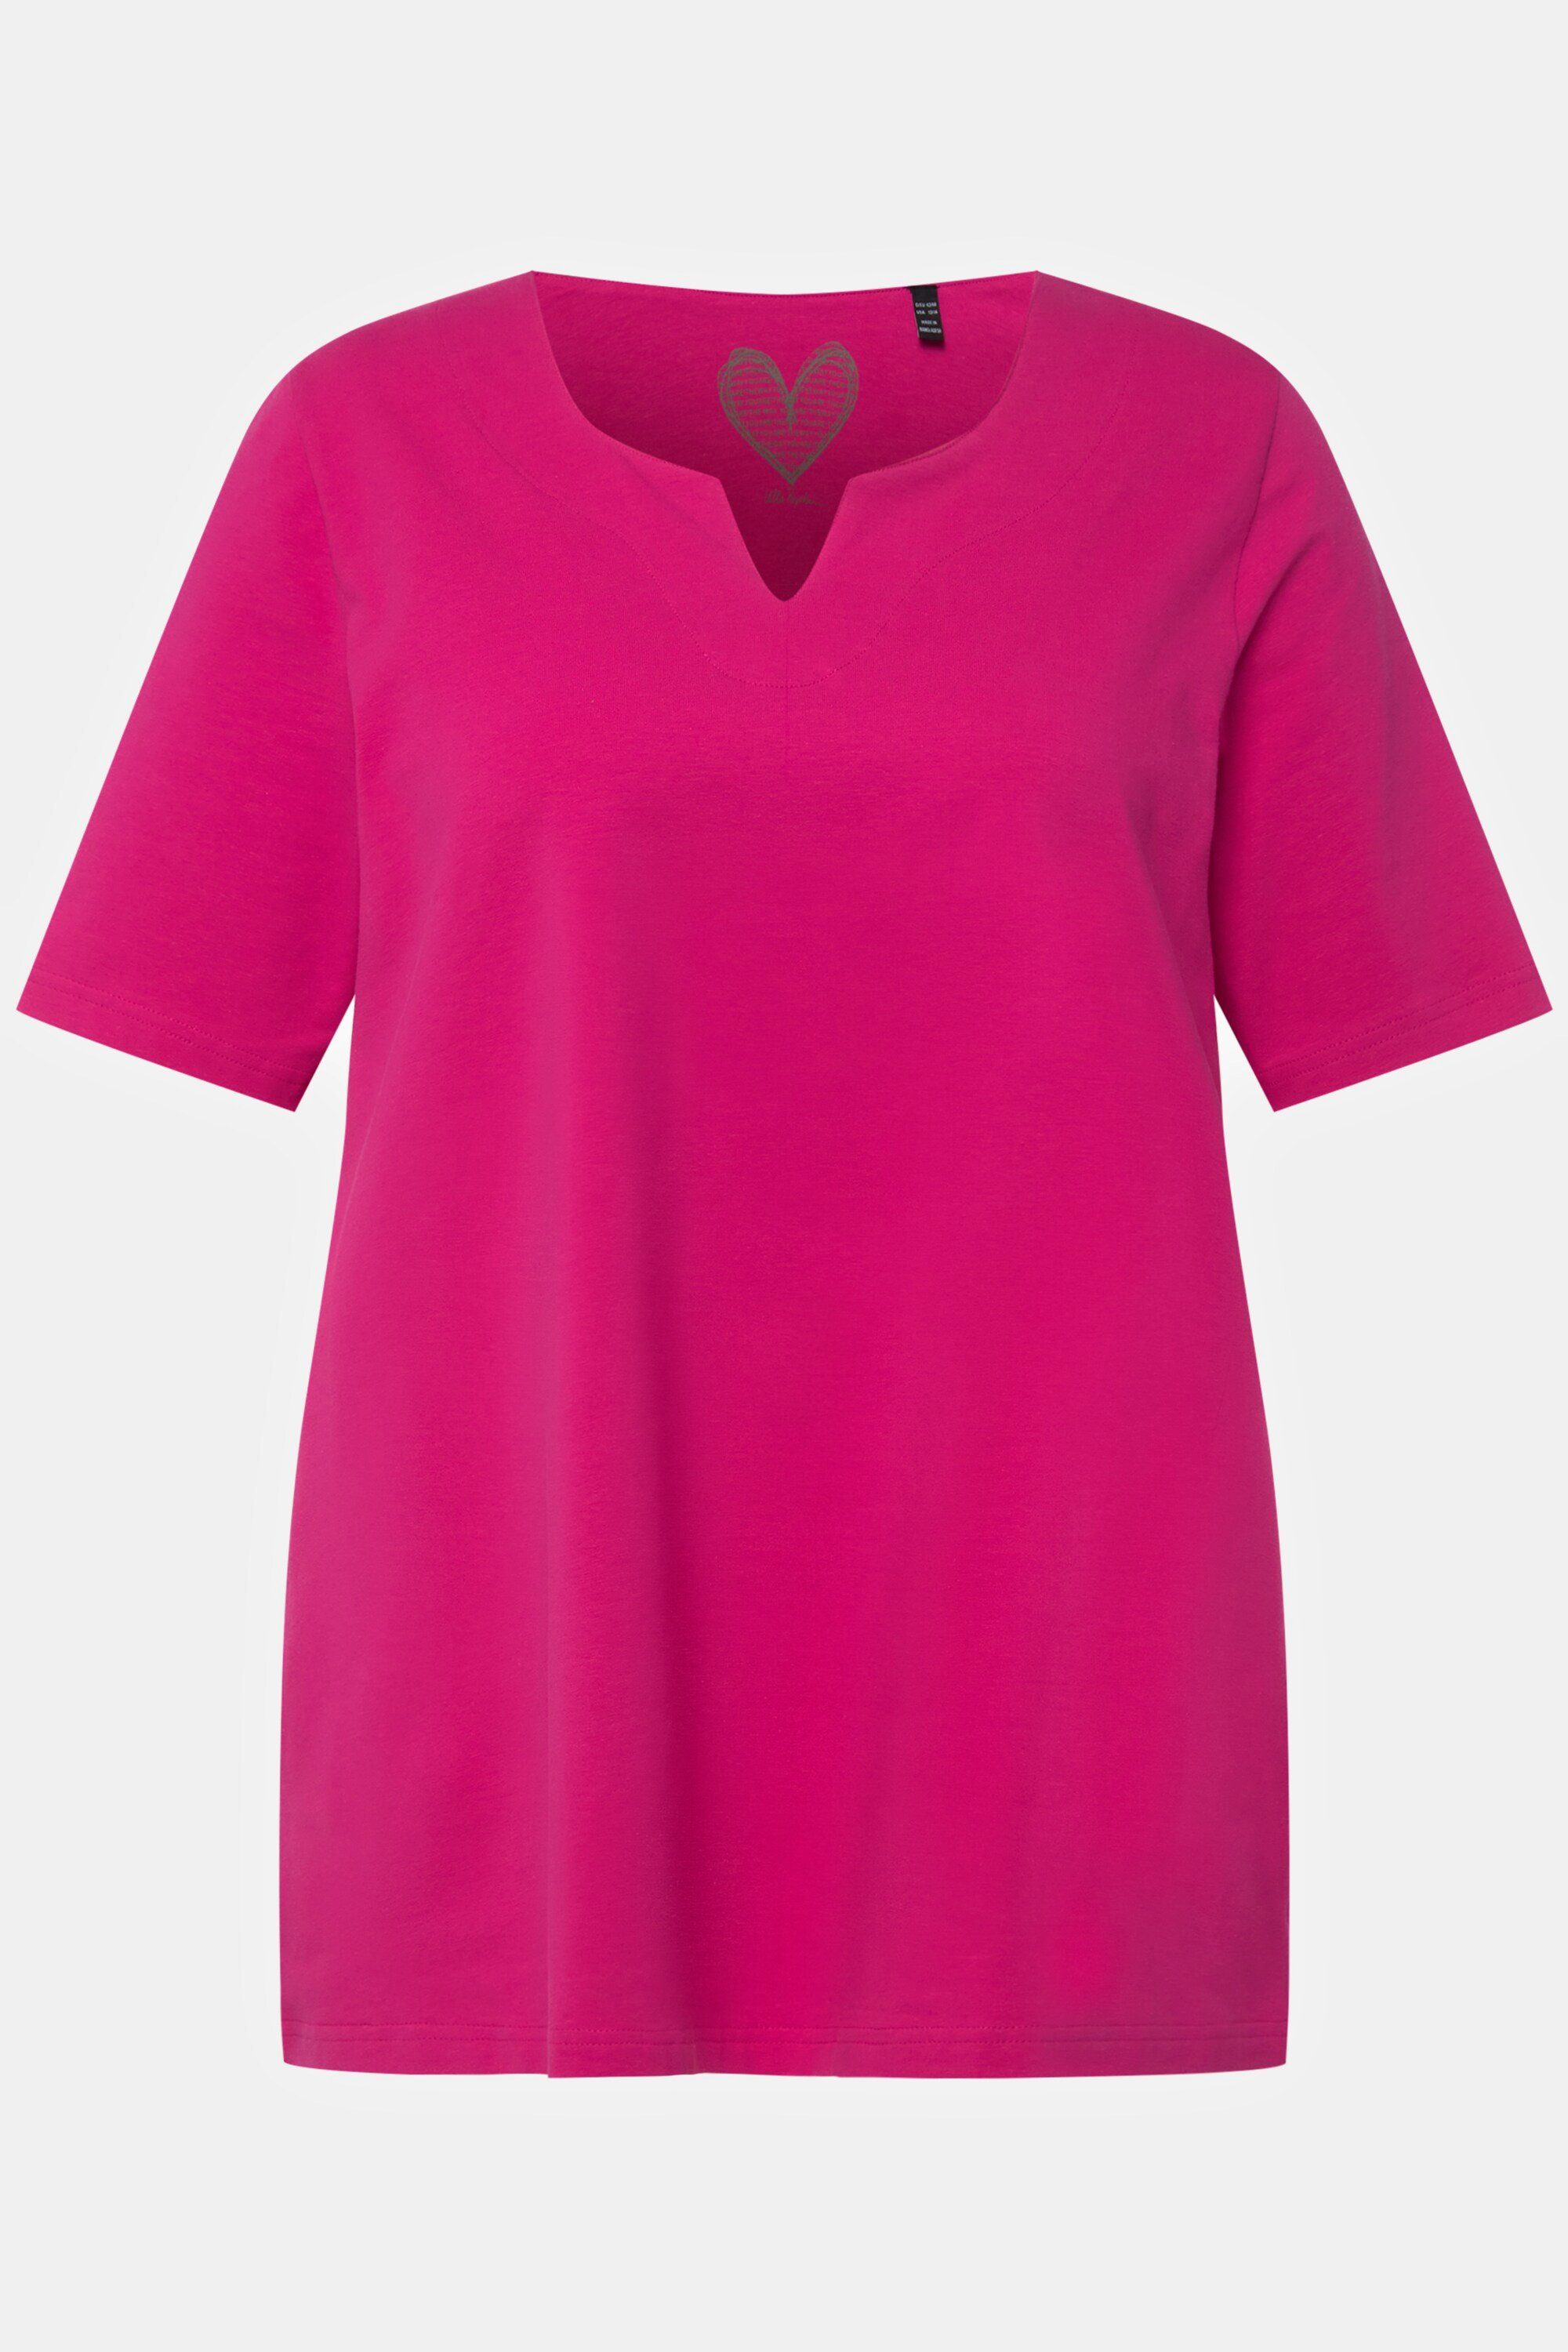 Ulla Popken pink Rundhalsshirt T-Shirt fuchsia A-Linie Halbarm Tunika-Ausschnitt